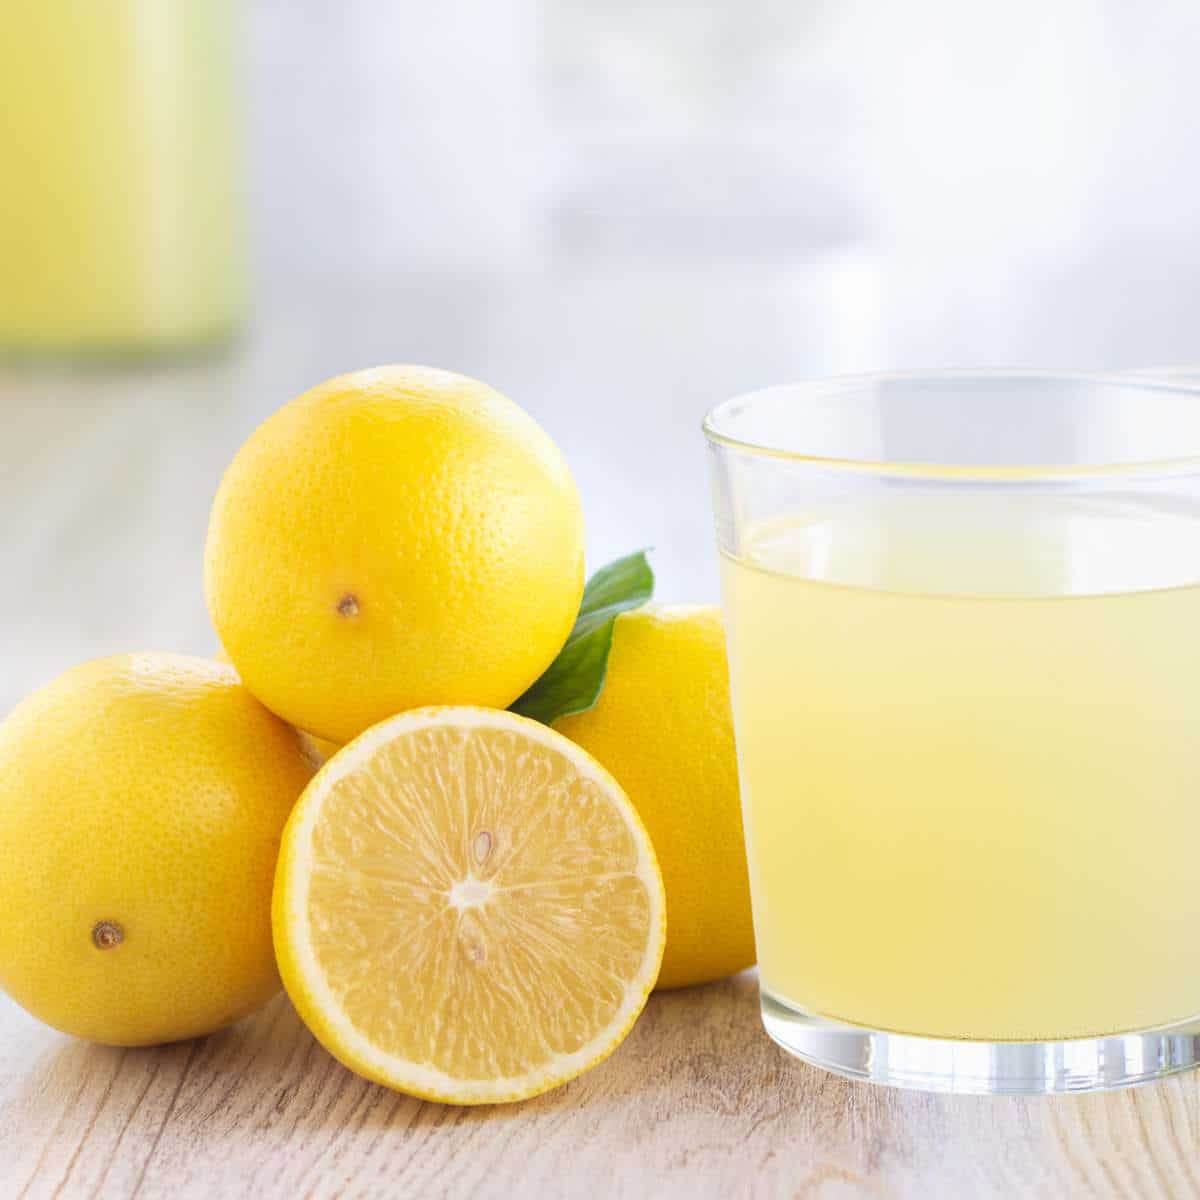 Does lemon juice go bad?